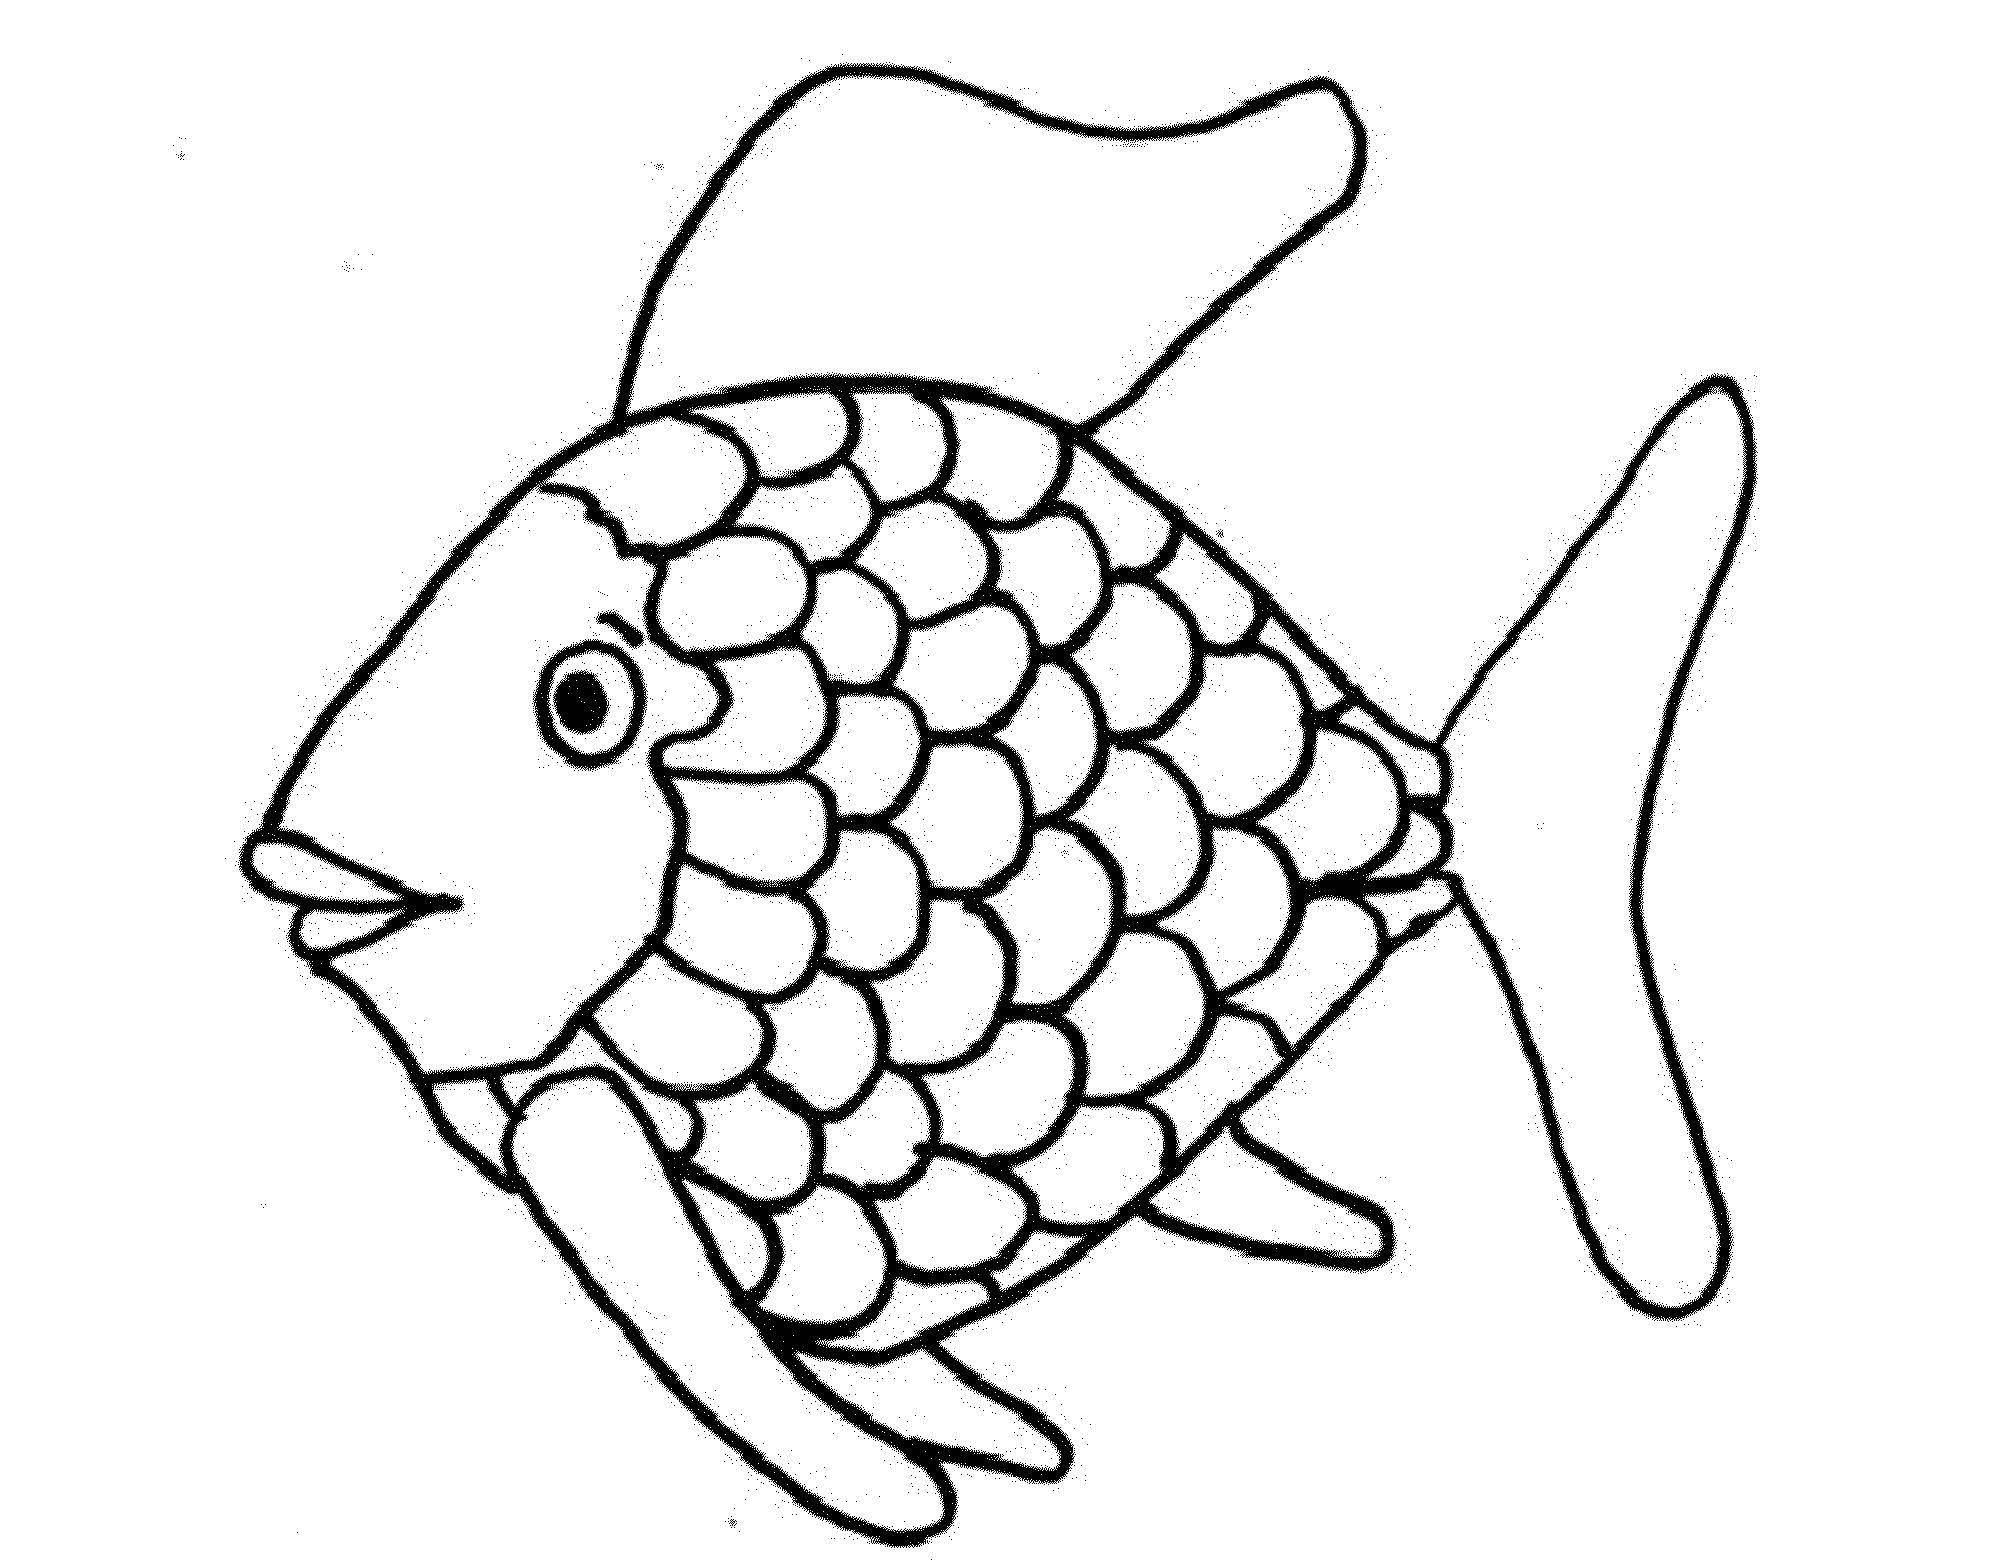 Раскраска рыбки для детей 5 6 лет